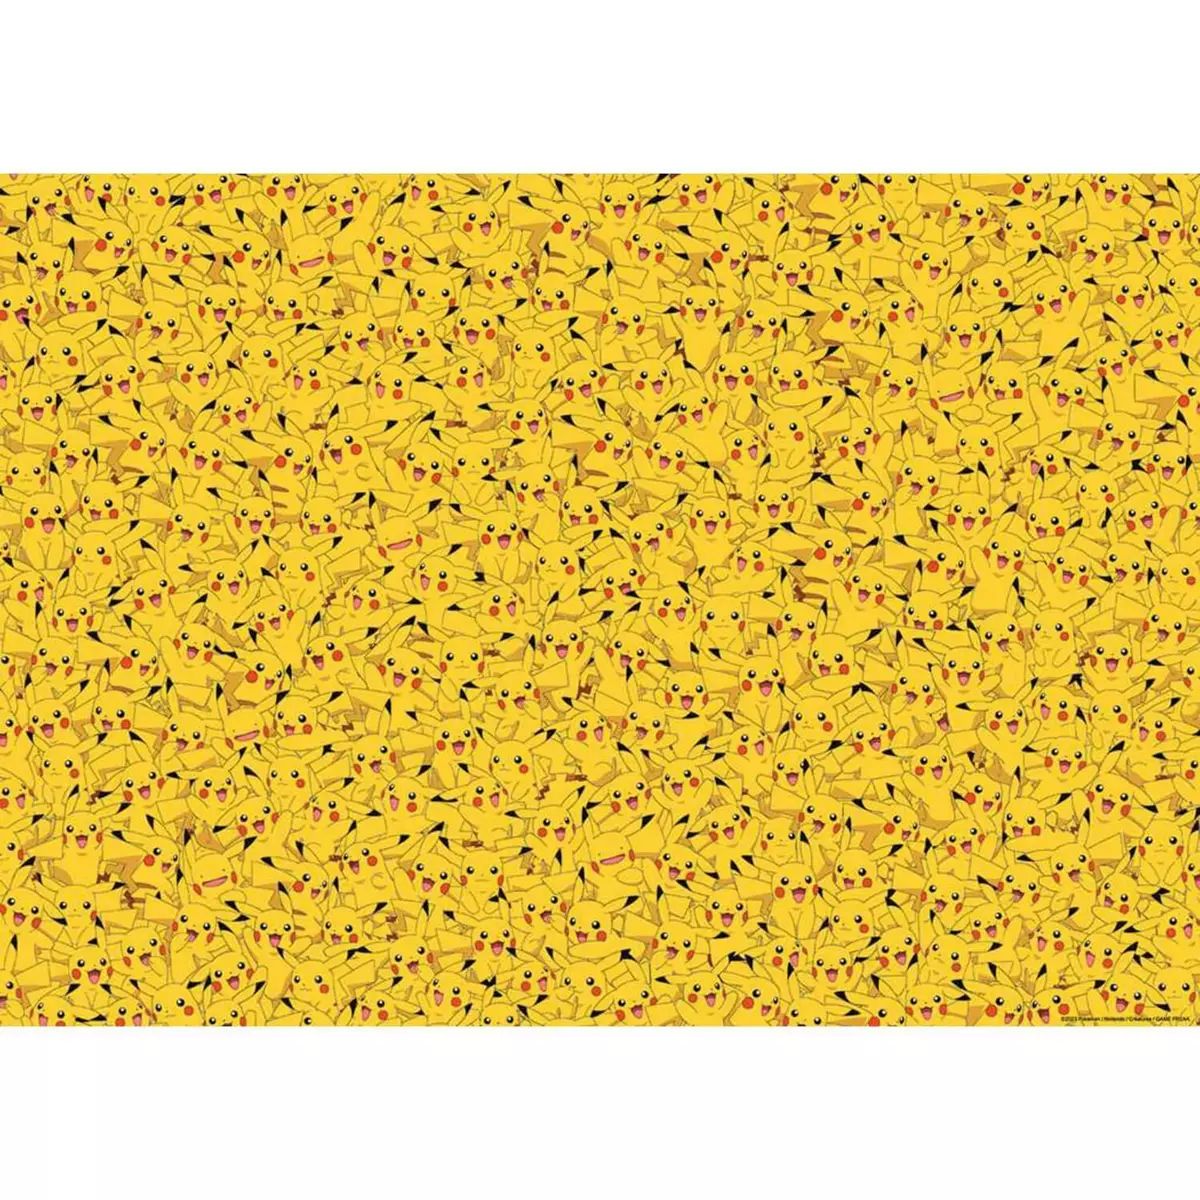 RAVENSBURGER Puzzle 1000 pièces : Challenge Puzzle : Pikachu, Pokémon